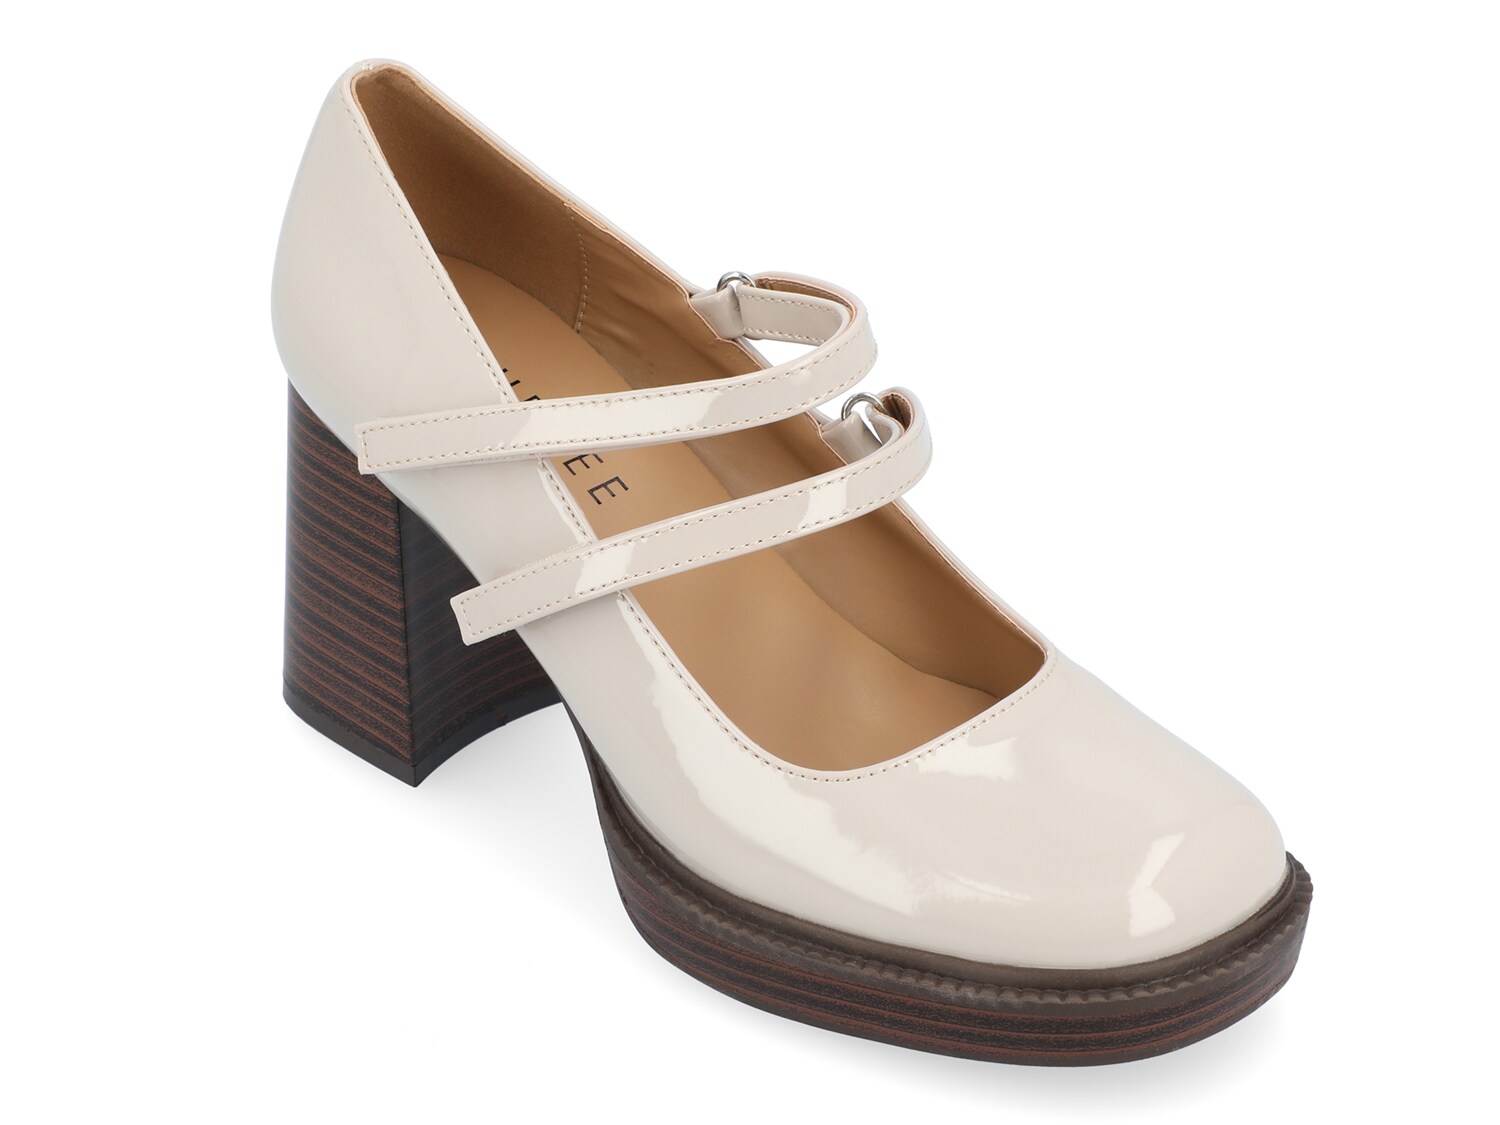 Туфли на платформе Journee Collection Shasta, серый туфли лодочки женские на платформе классические свадебные туфли мэри джейн средний каблук черные белые 2021